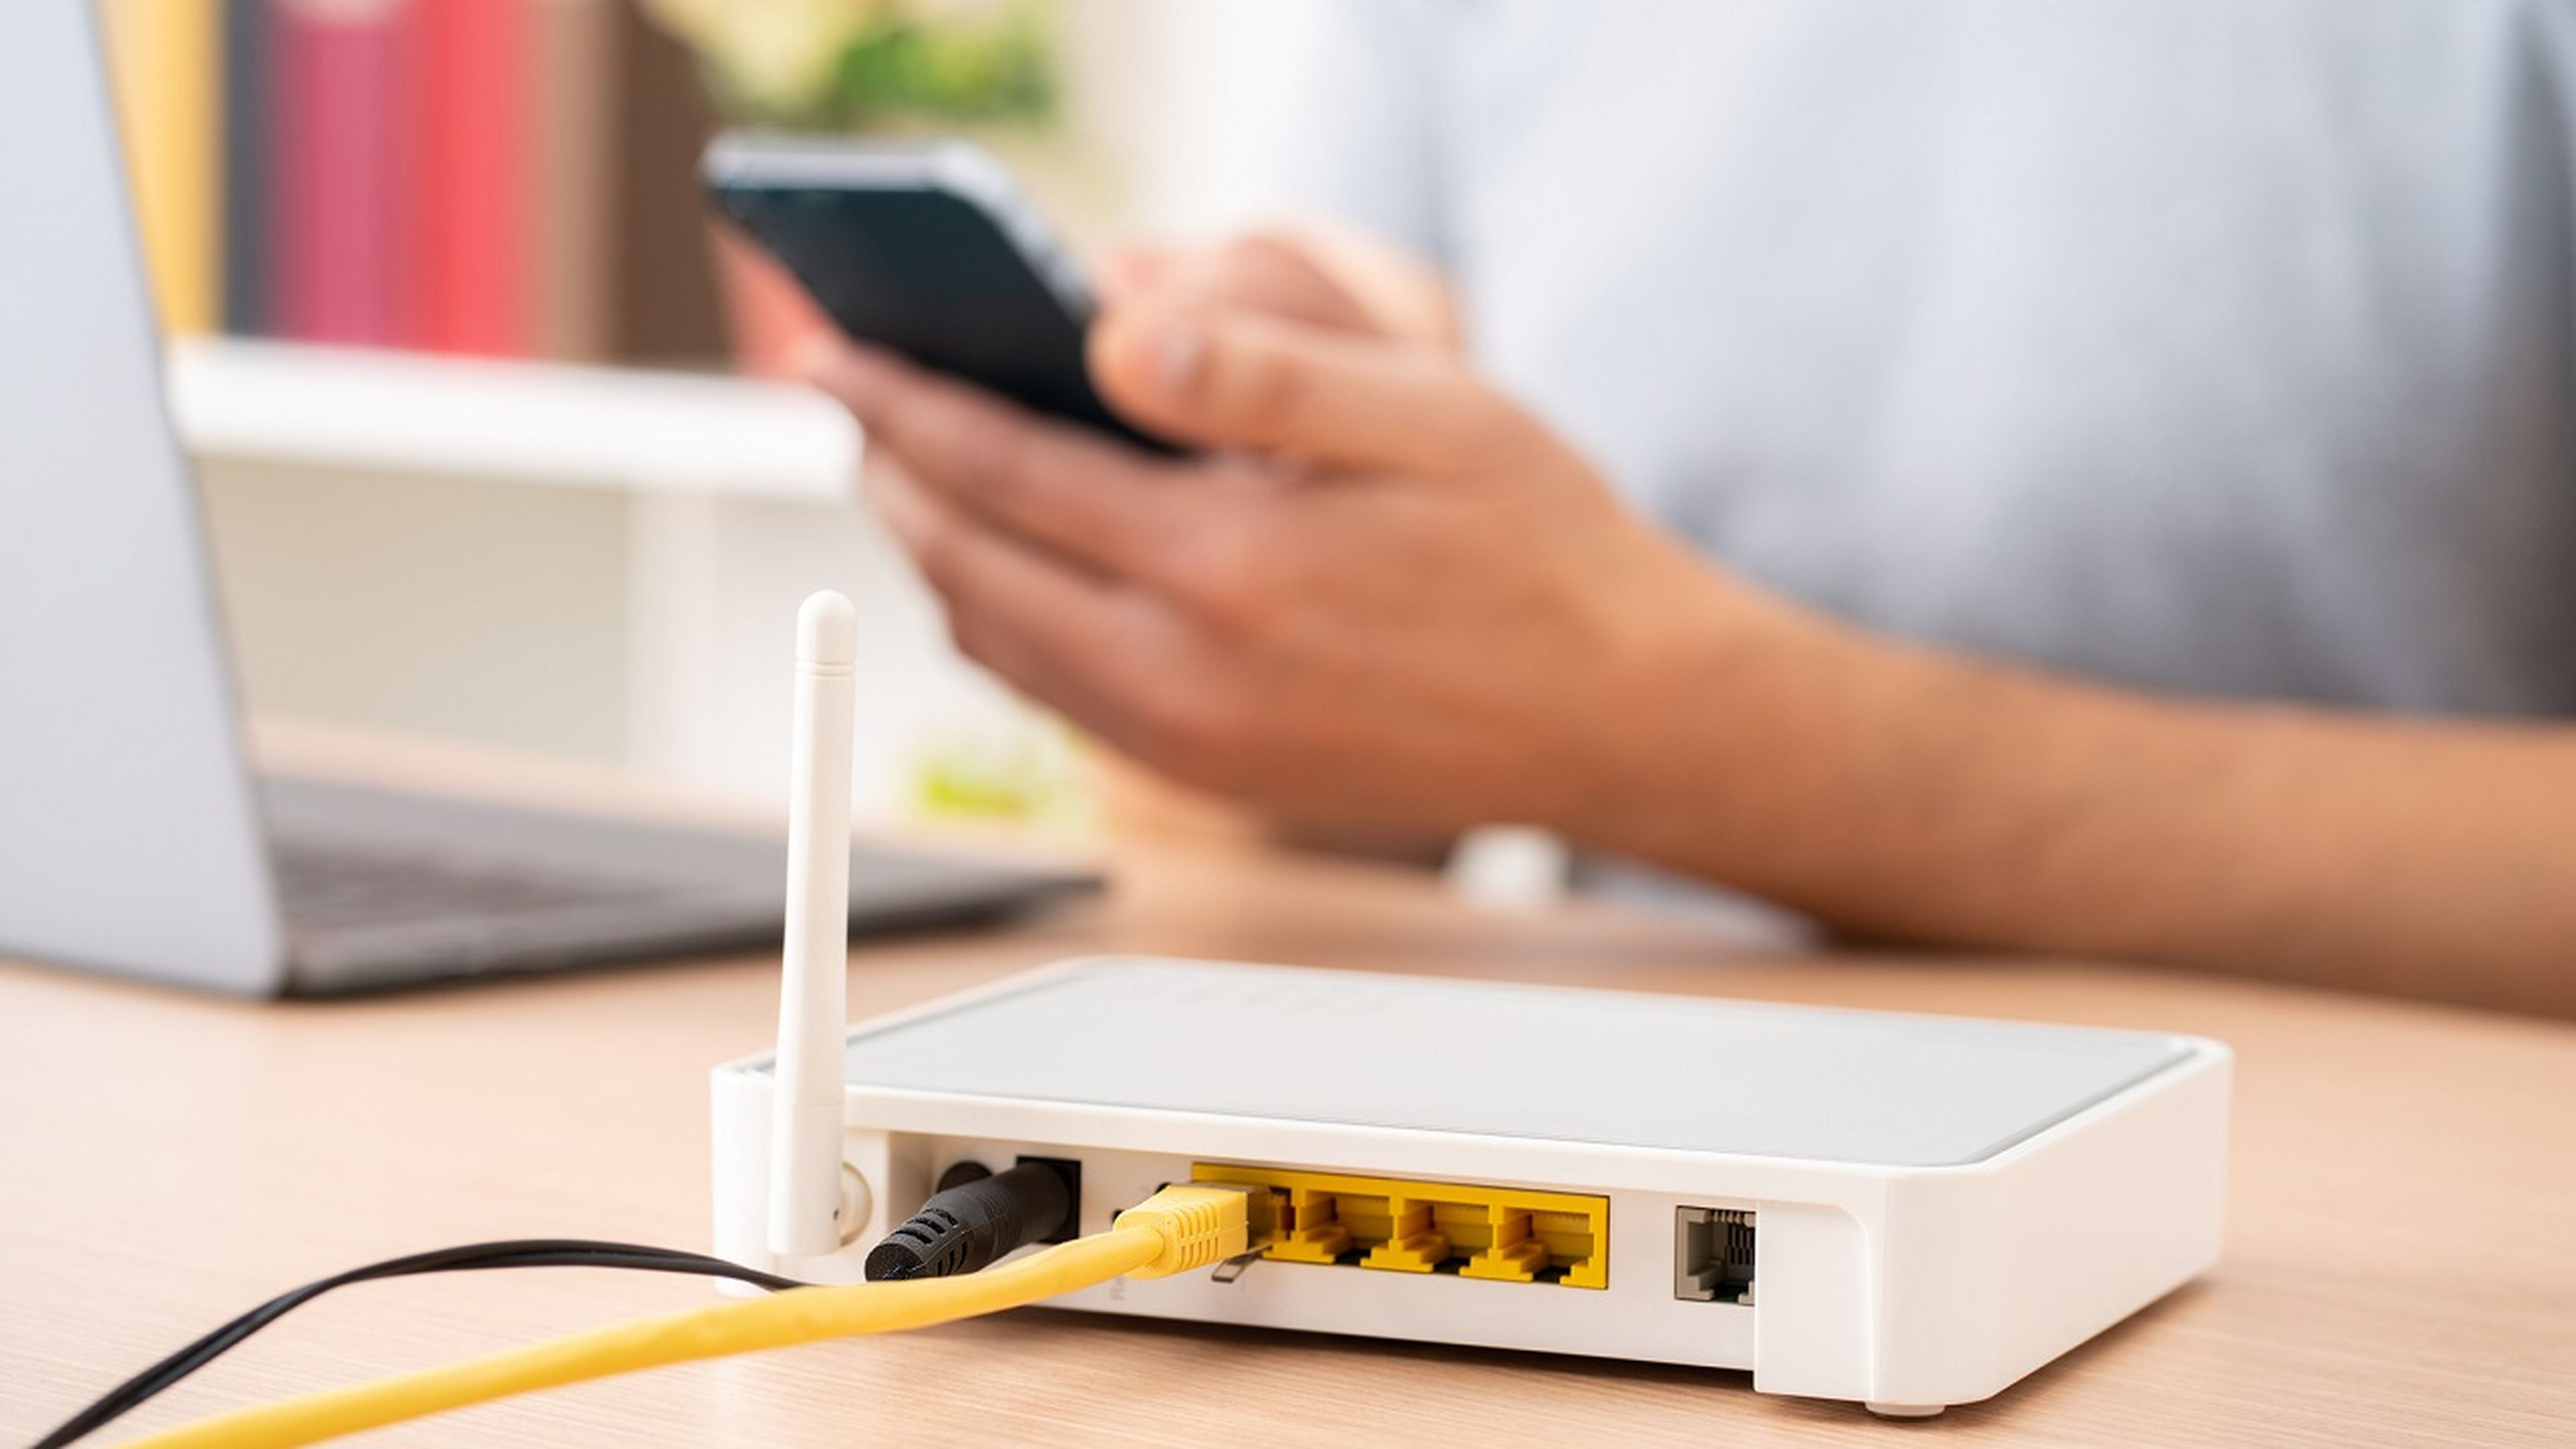 Cambiar a un router 5G no es obligatorio, y menos gratis: cuidado con esta estafa